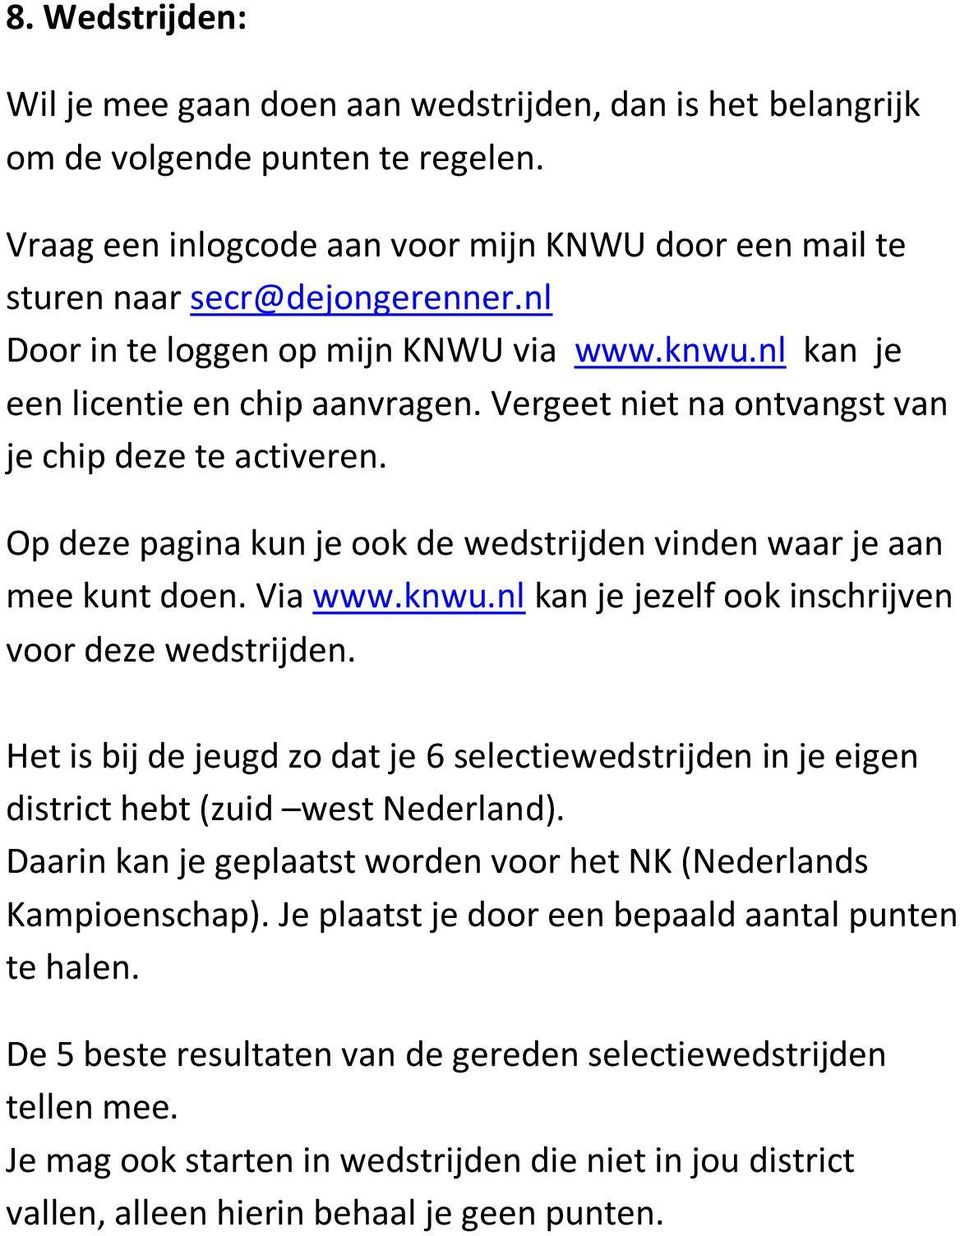 Op deze pagina kun je ook de wedstrijden vinden waar je aan mee kunt doen. Via www.knwu.nl kan je jezelf ook inschrijven voor deze wedstrijden.